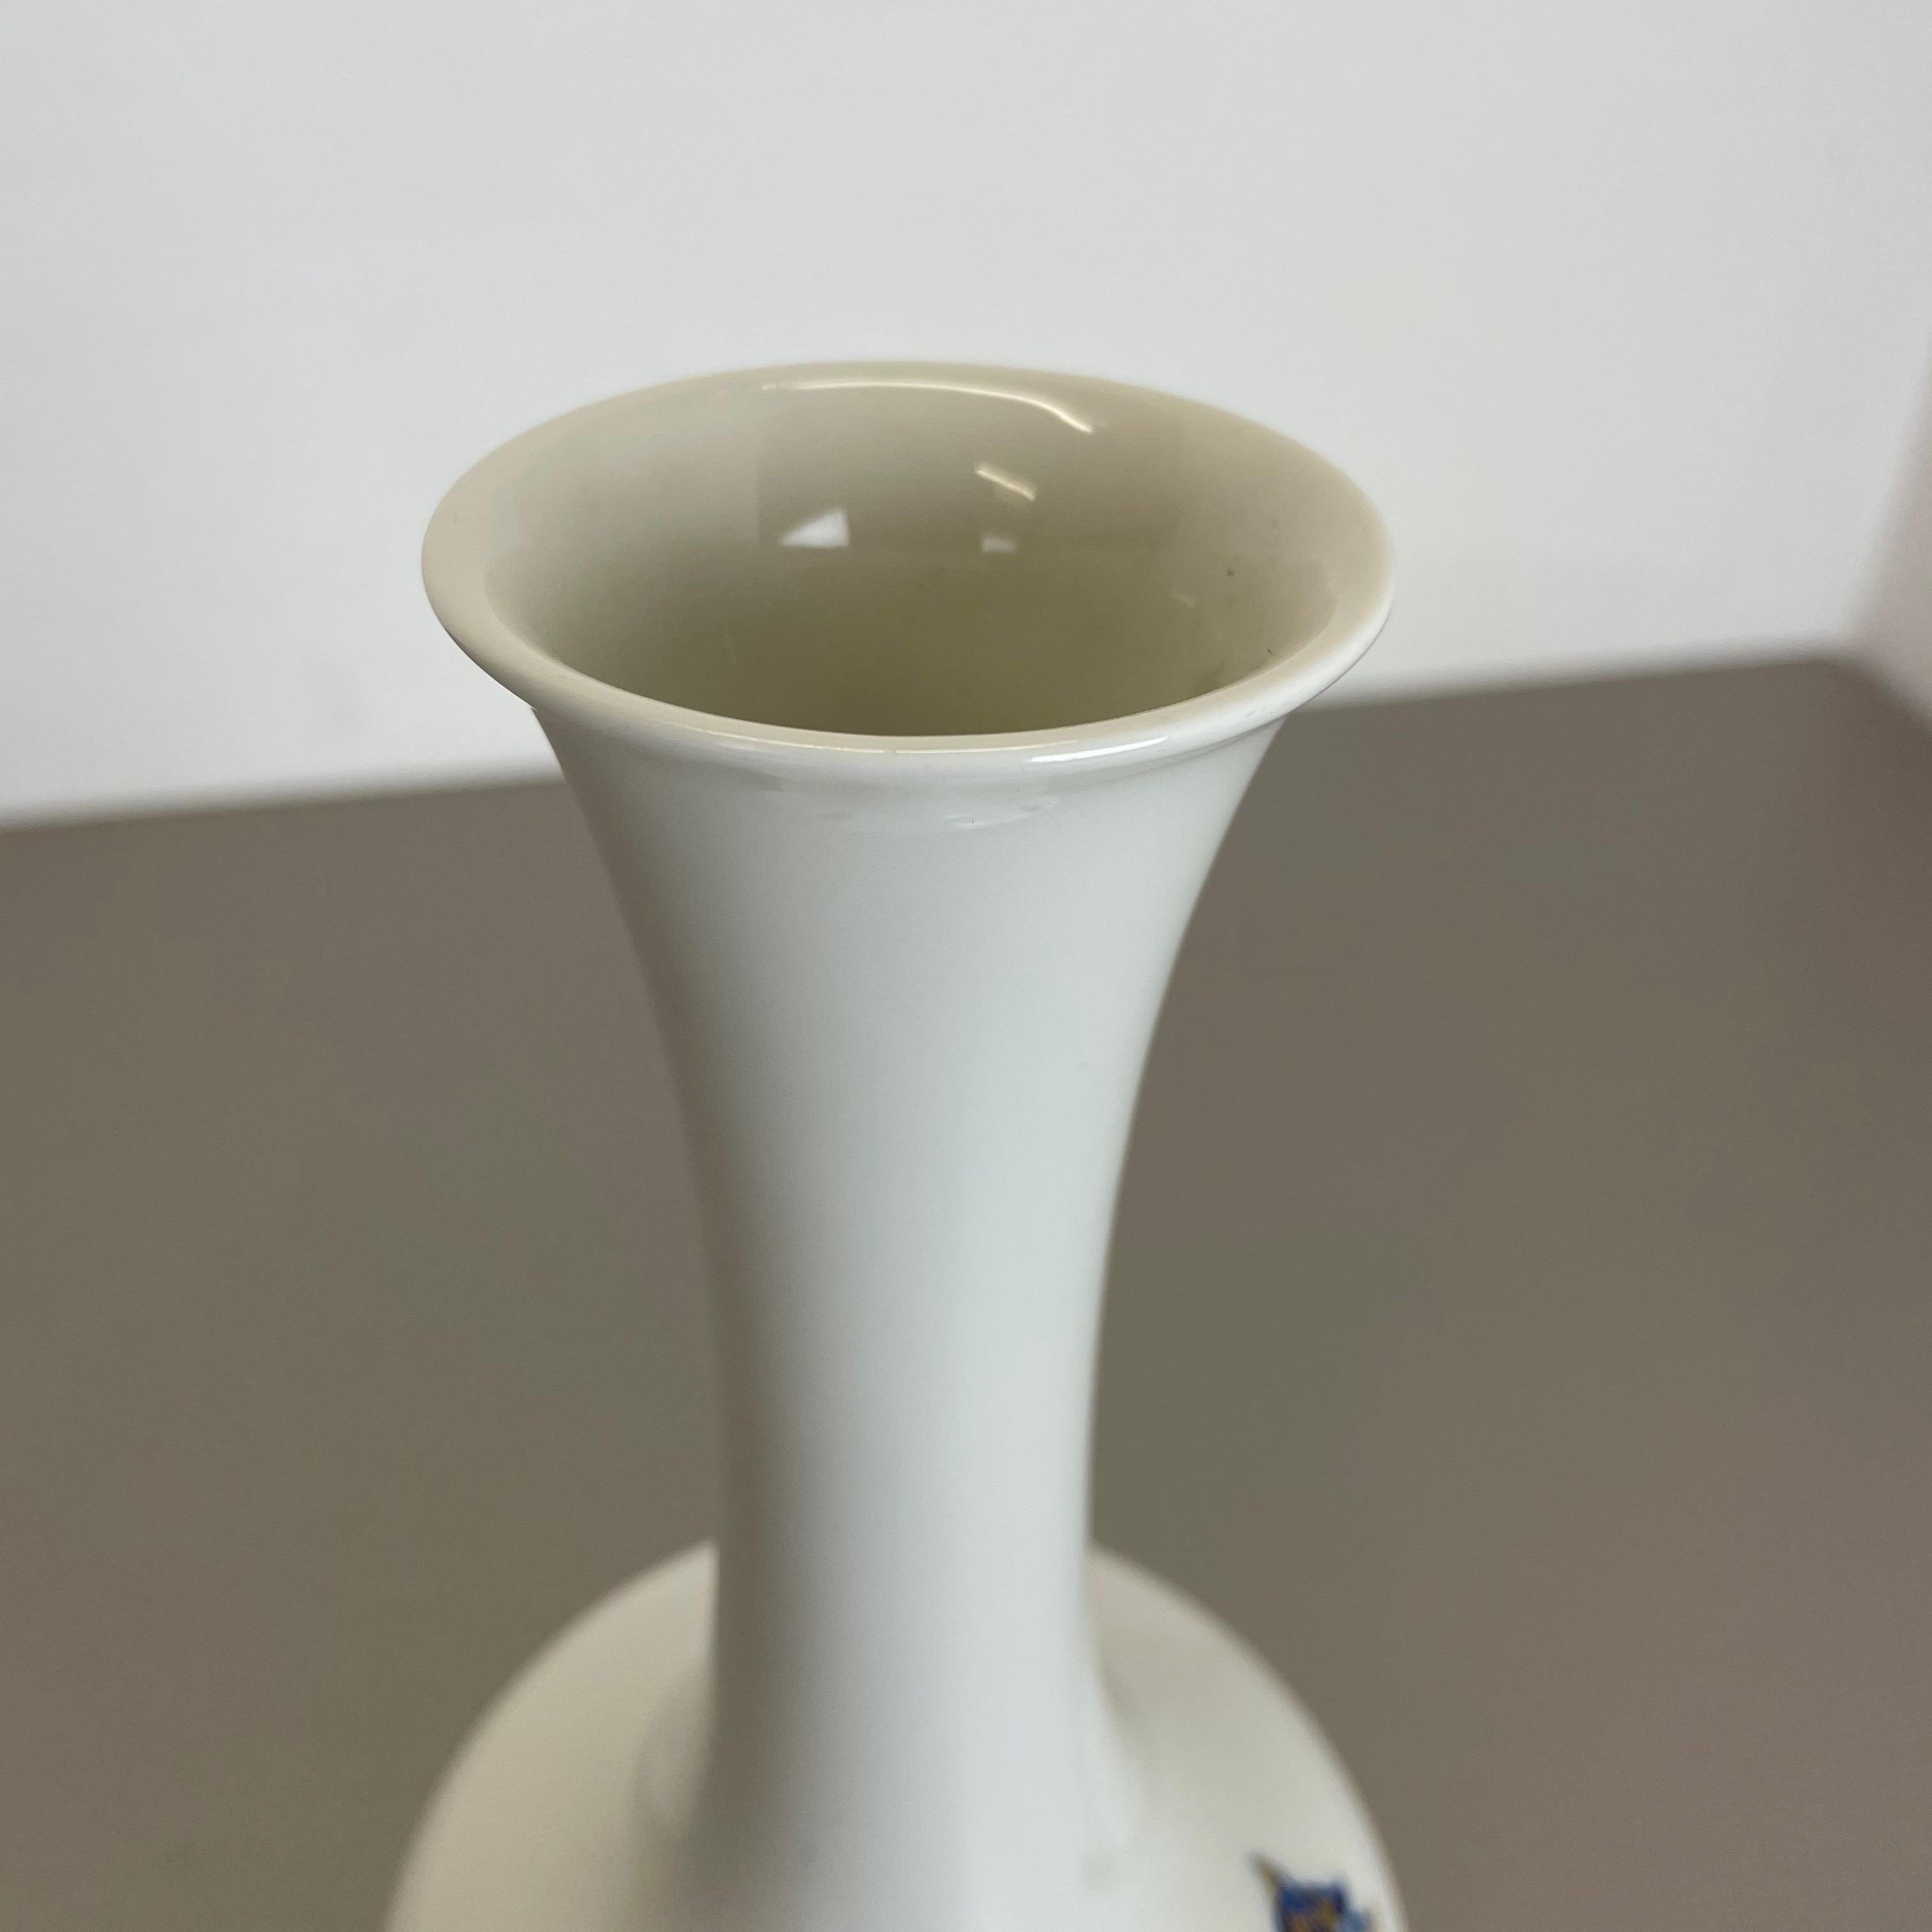 Original 1970s Op Art Vase Porcelain German Vase by Heinrich Ceramics, Germany For Sale 5